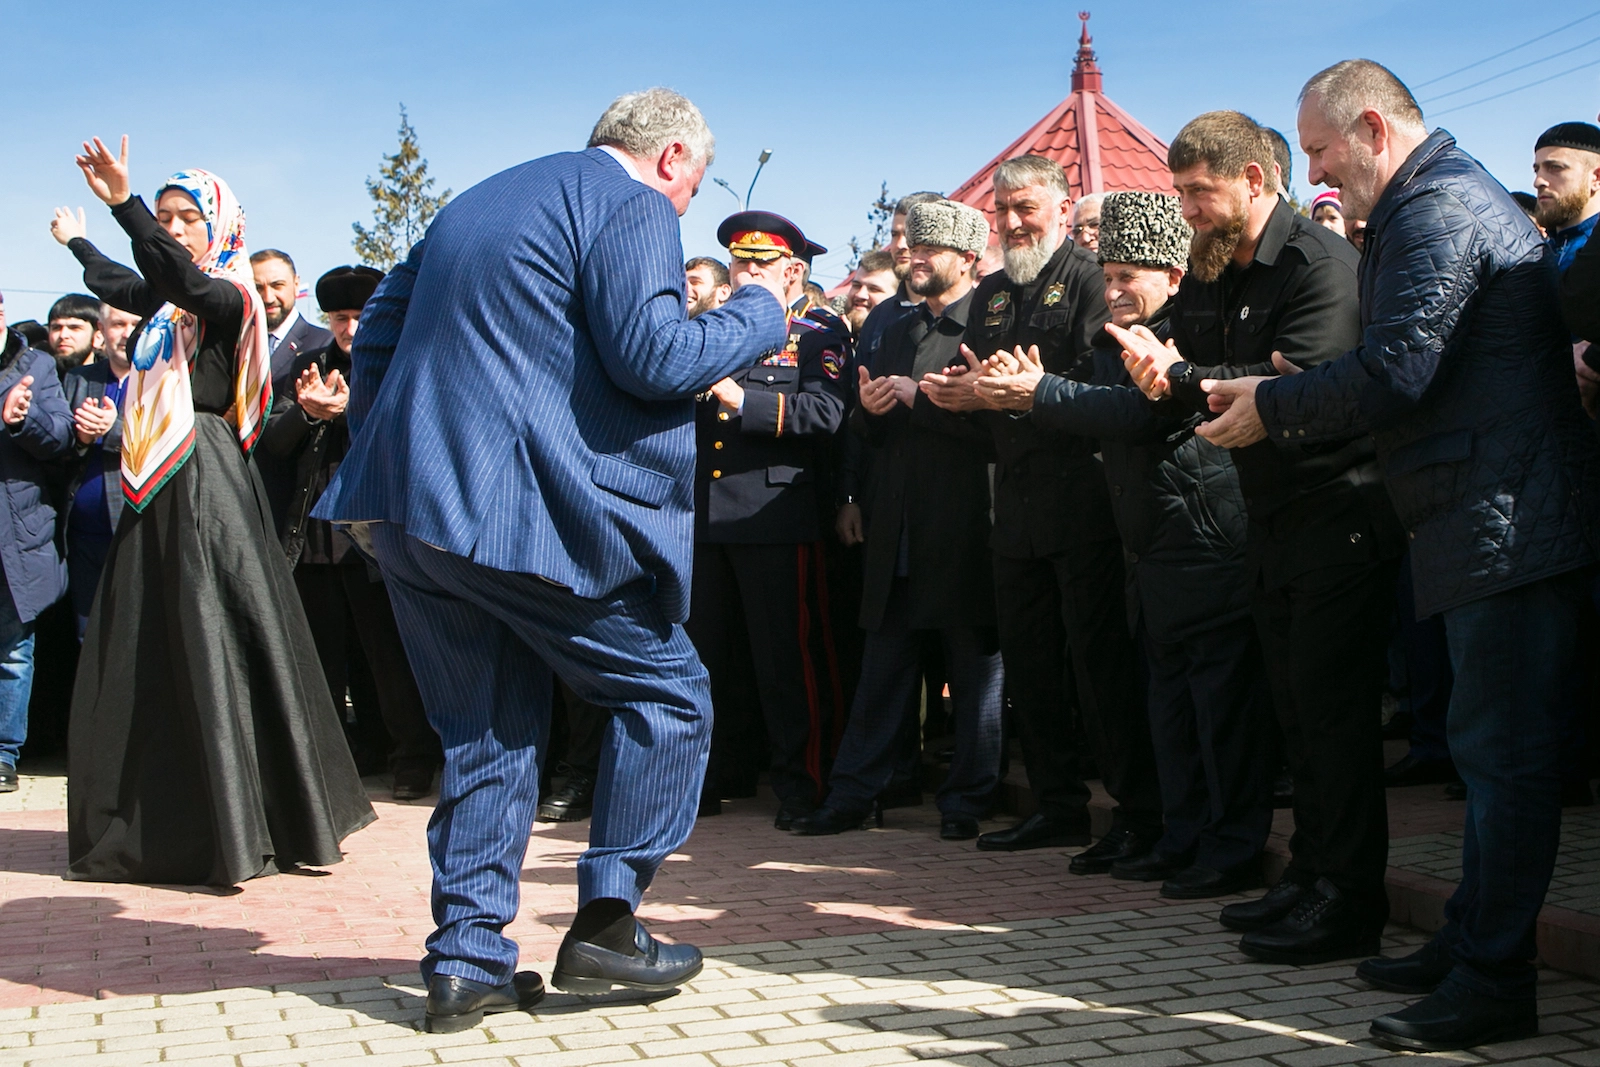 Ramzan Kadyrov ukazuje a lidé tančí. Vládce Čečenska přijel k volební místnosti v rodném městečku. Foto: Majda Slámová/Voxpot